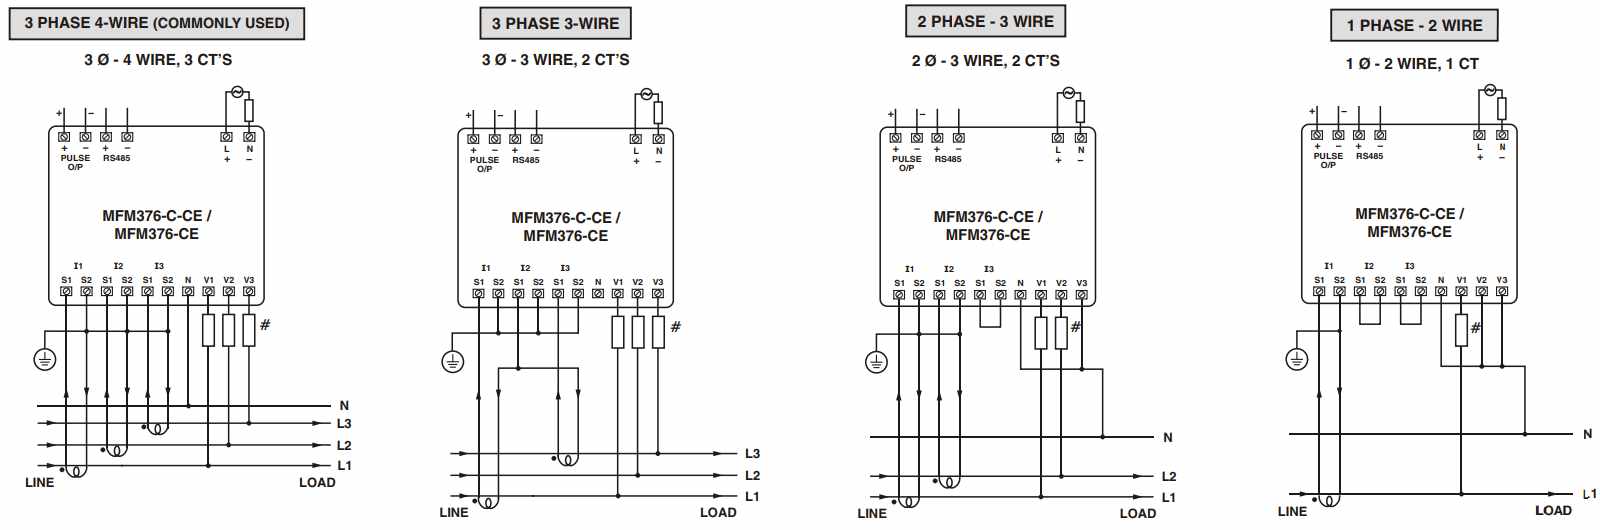 wiring of MFM376 3p4w 3p3w 2p3w 1p2w